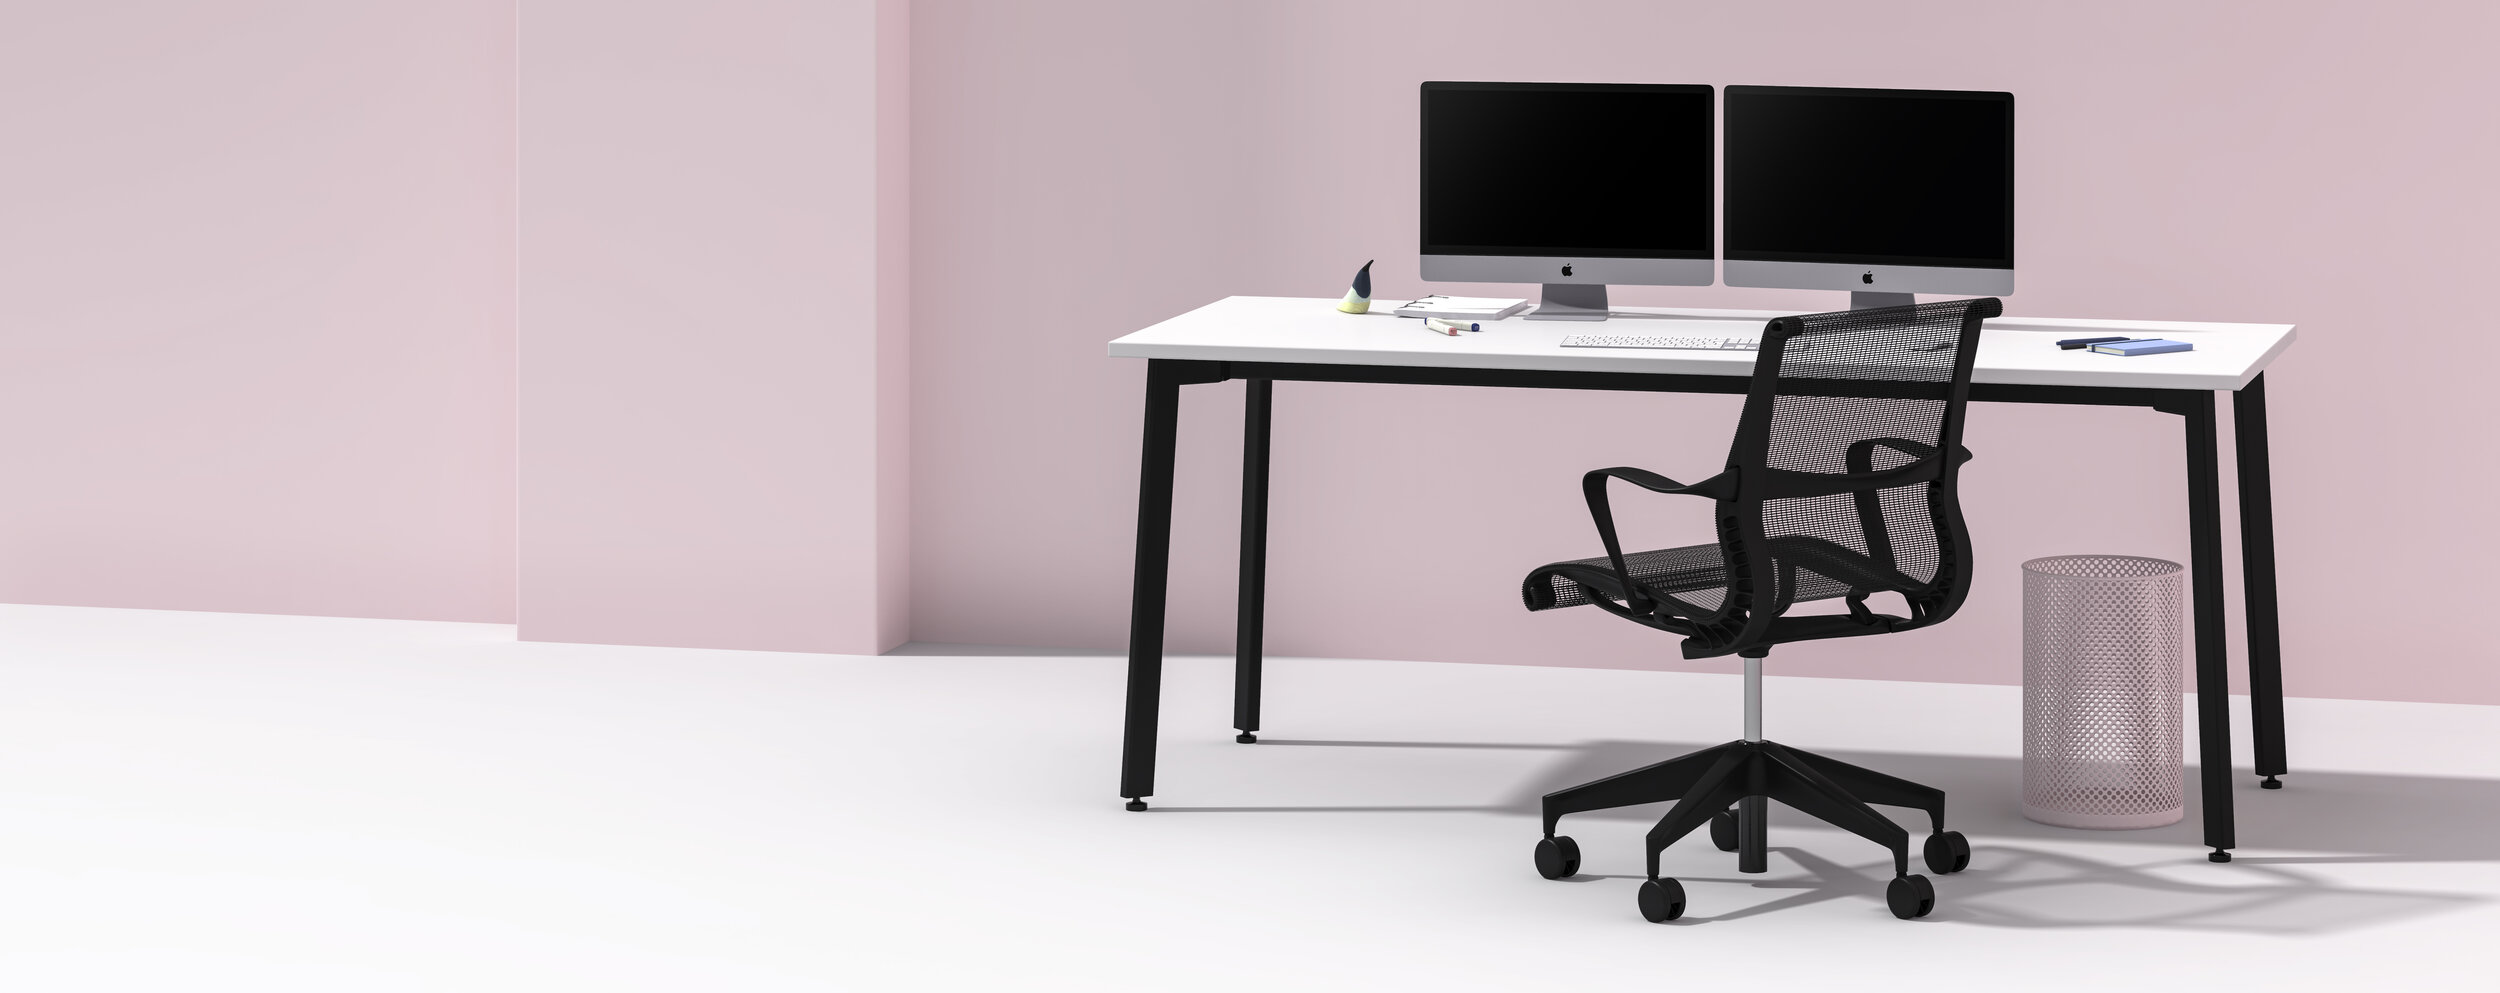 Nova_Desk_Pink.jpg